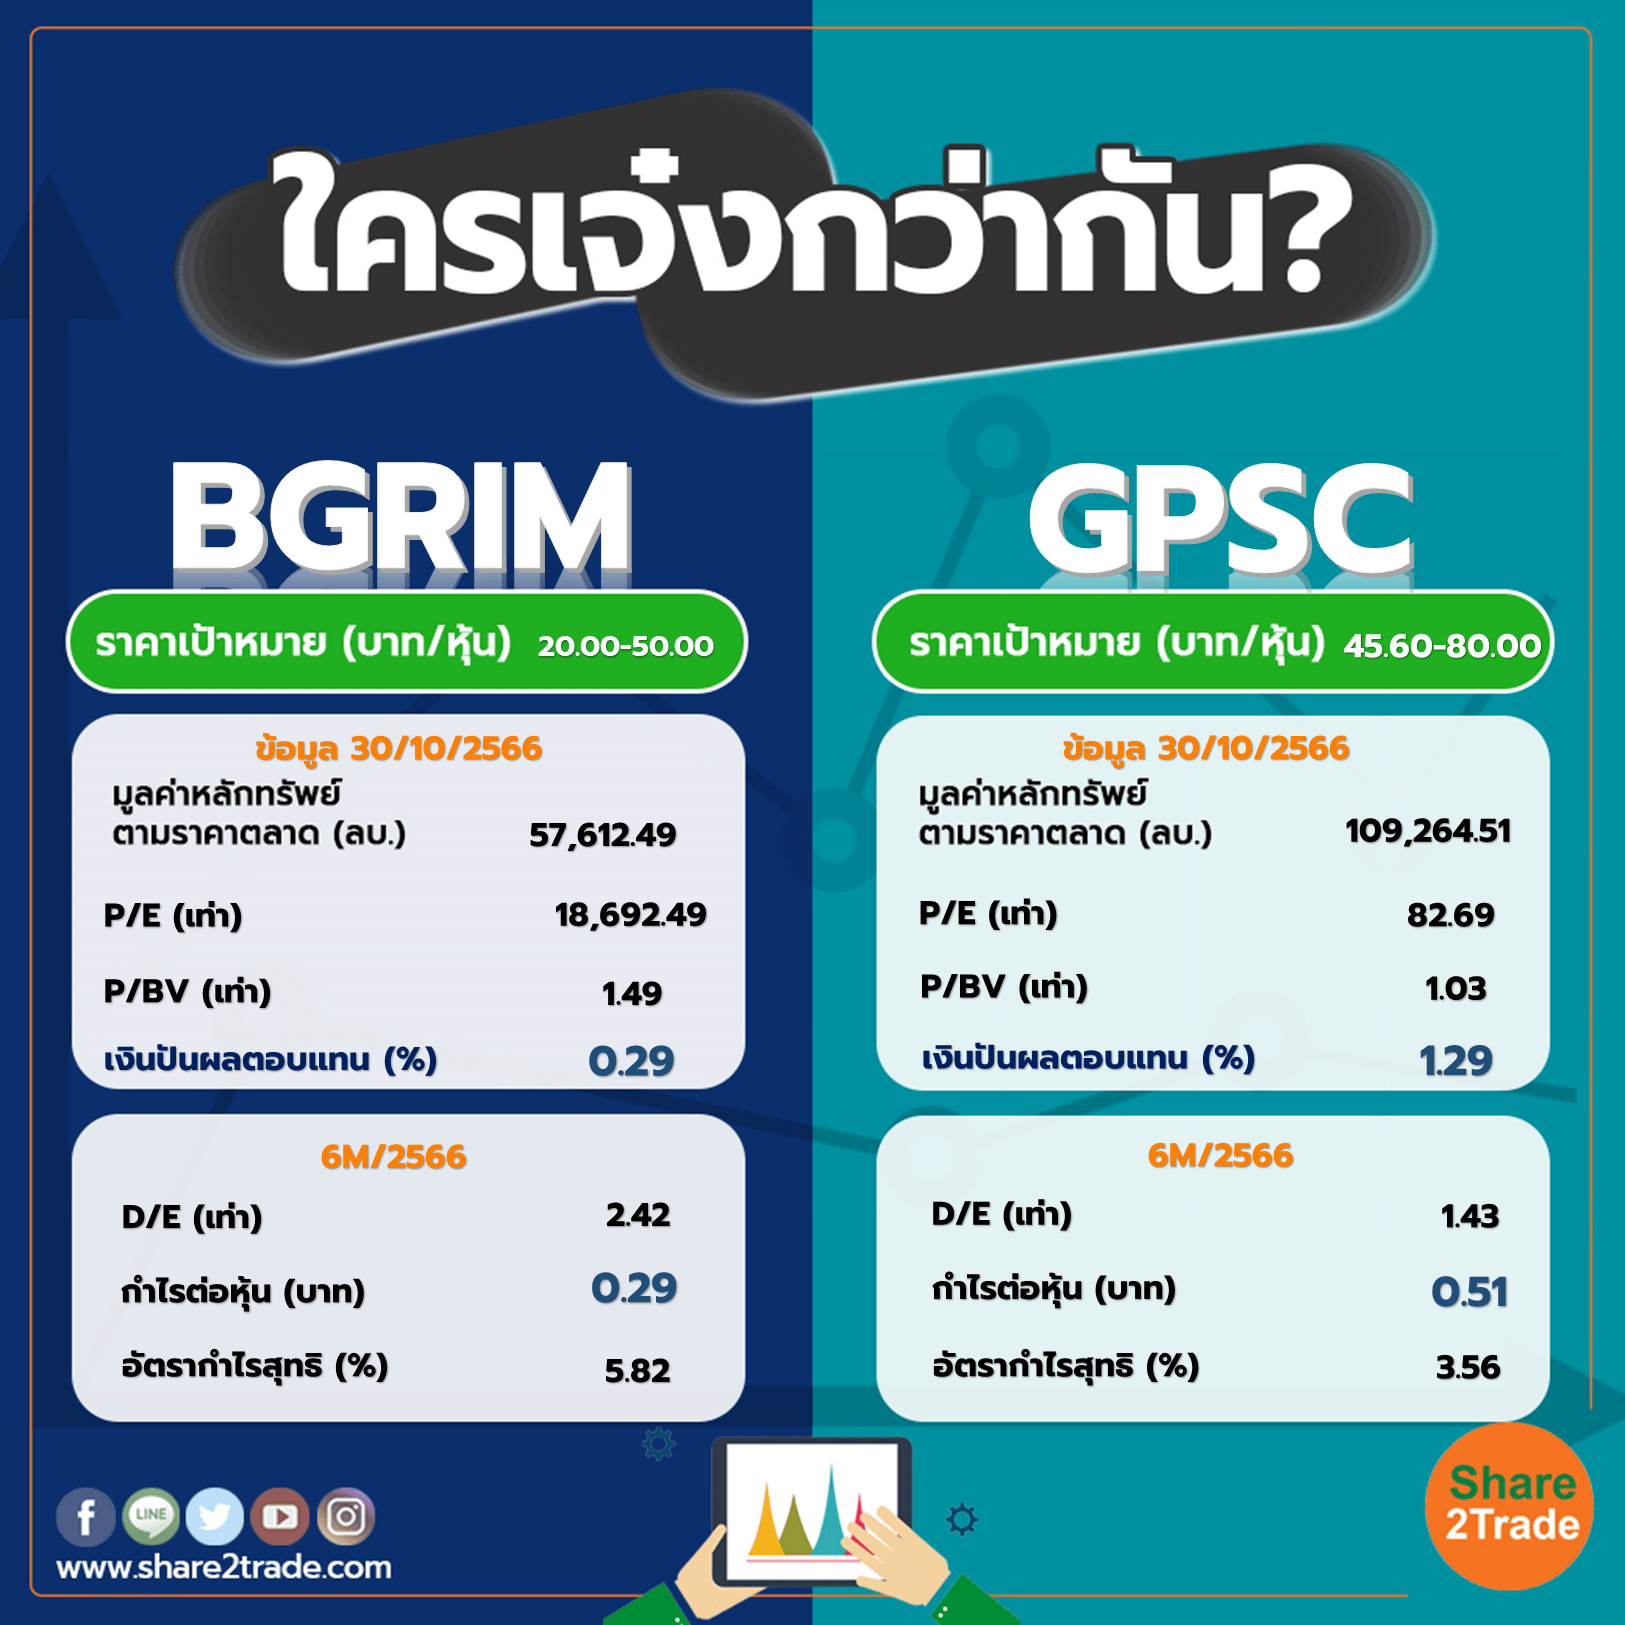 ใครเจ๋งกว่ากัน "BGRIM" VS "GPSC"